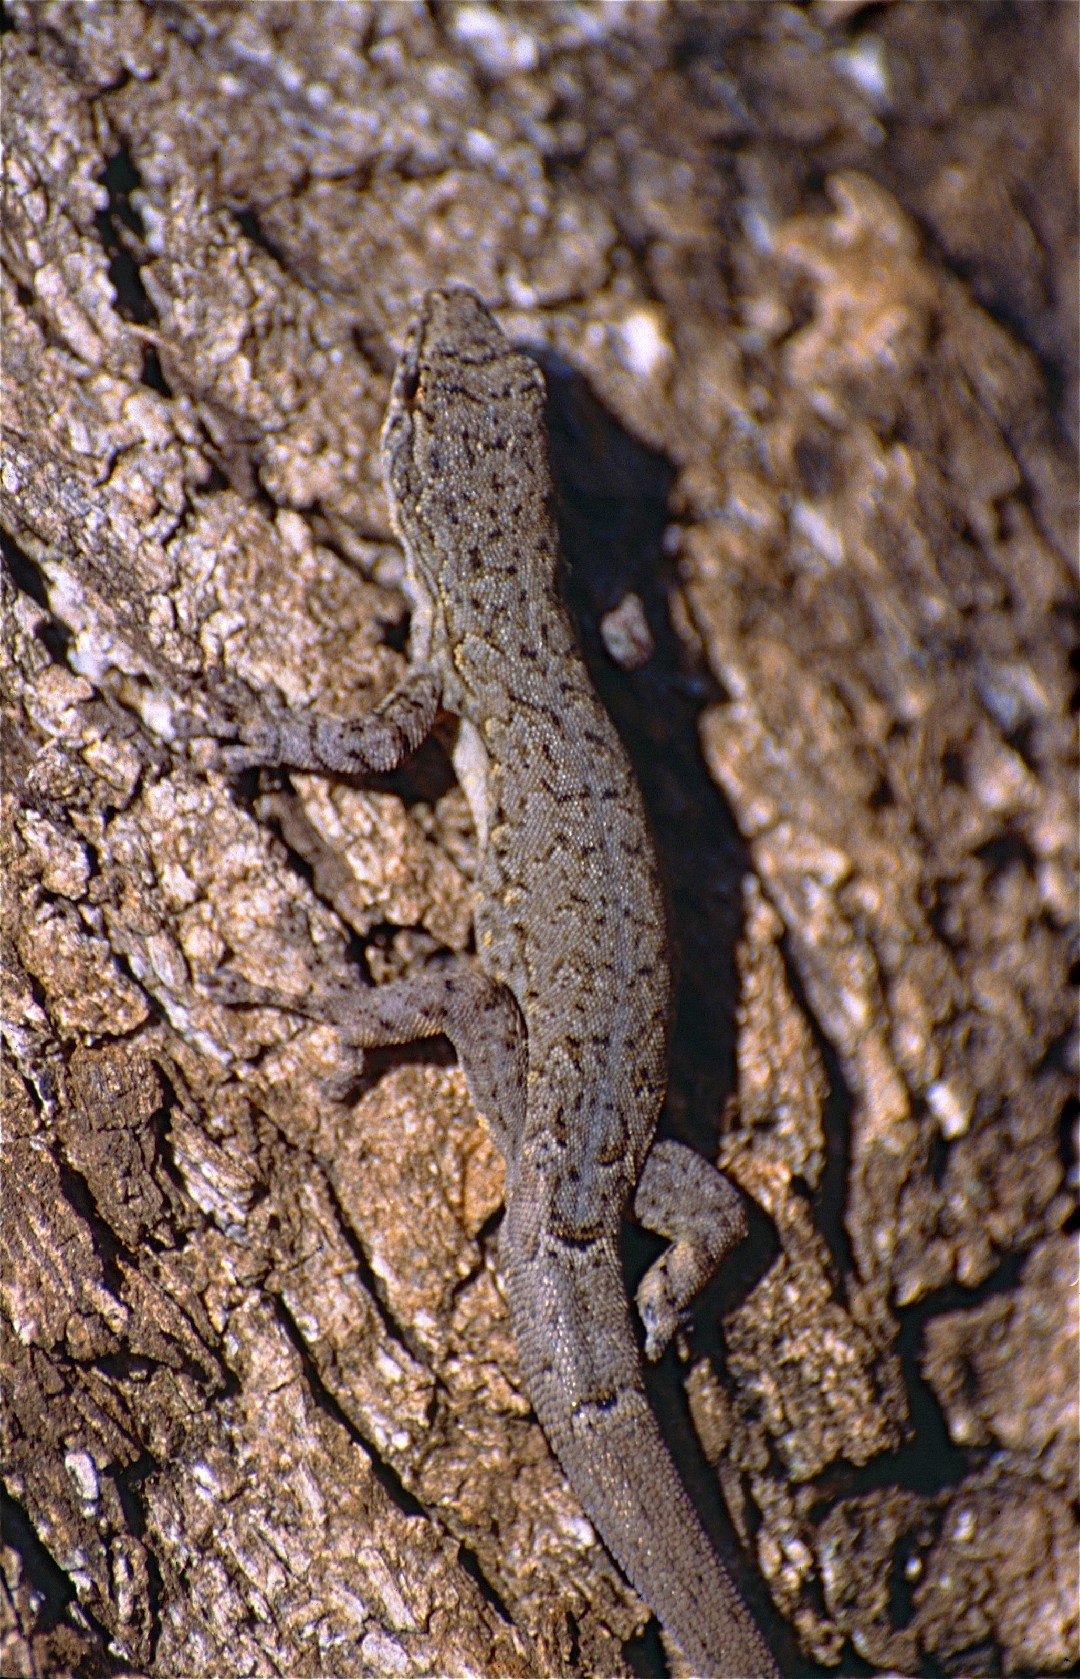 Dwarf geckos (Lygodactylus)